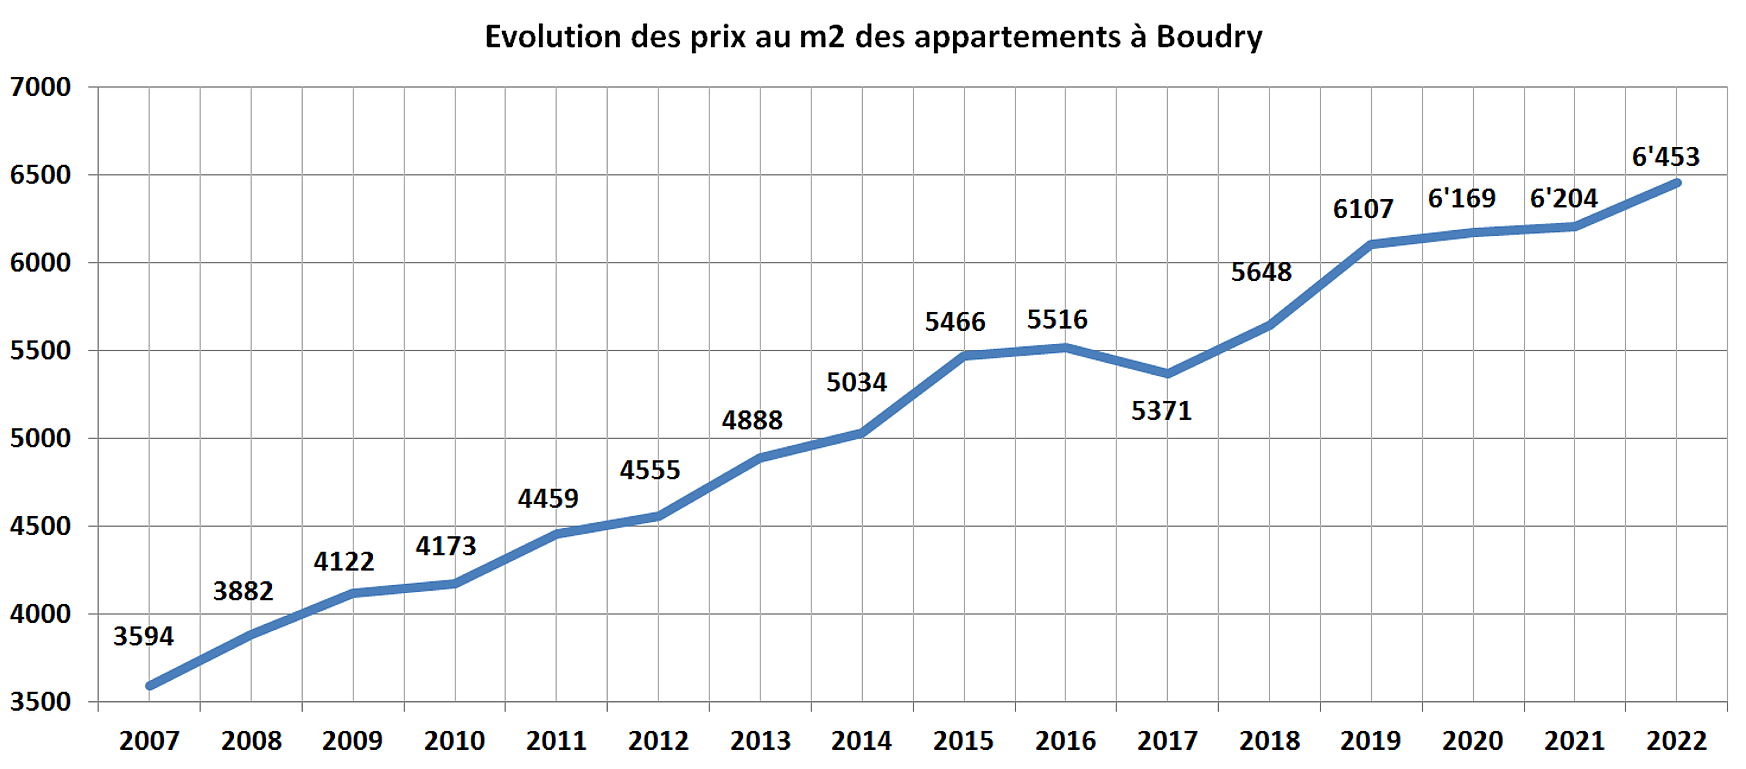 evolution prix m2 appartement boudry 2022